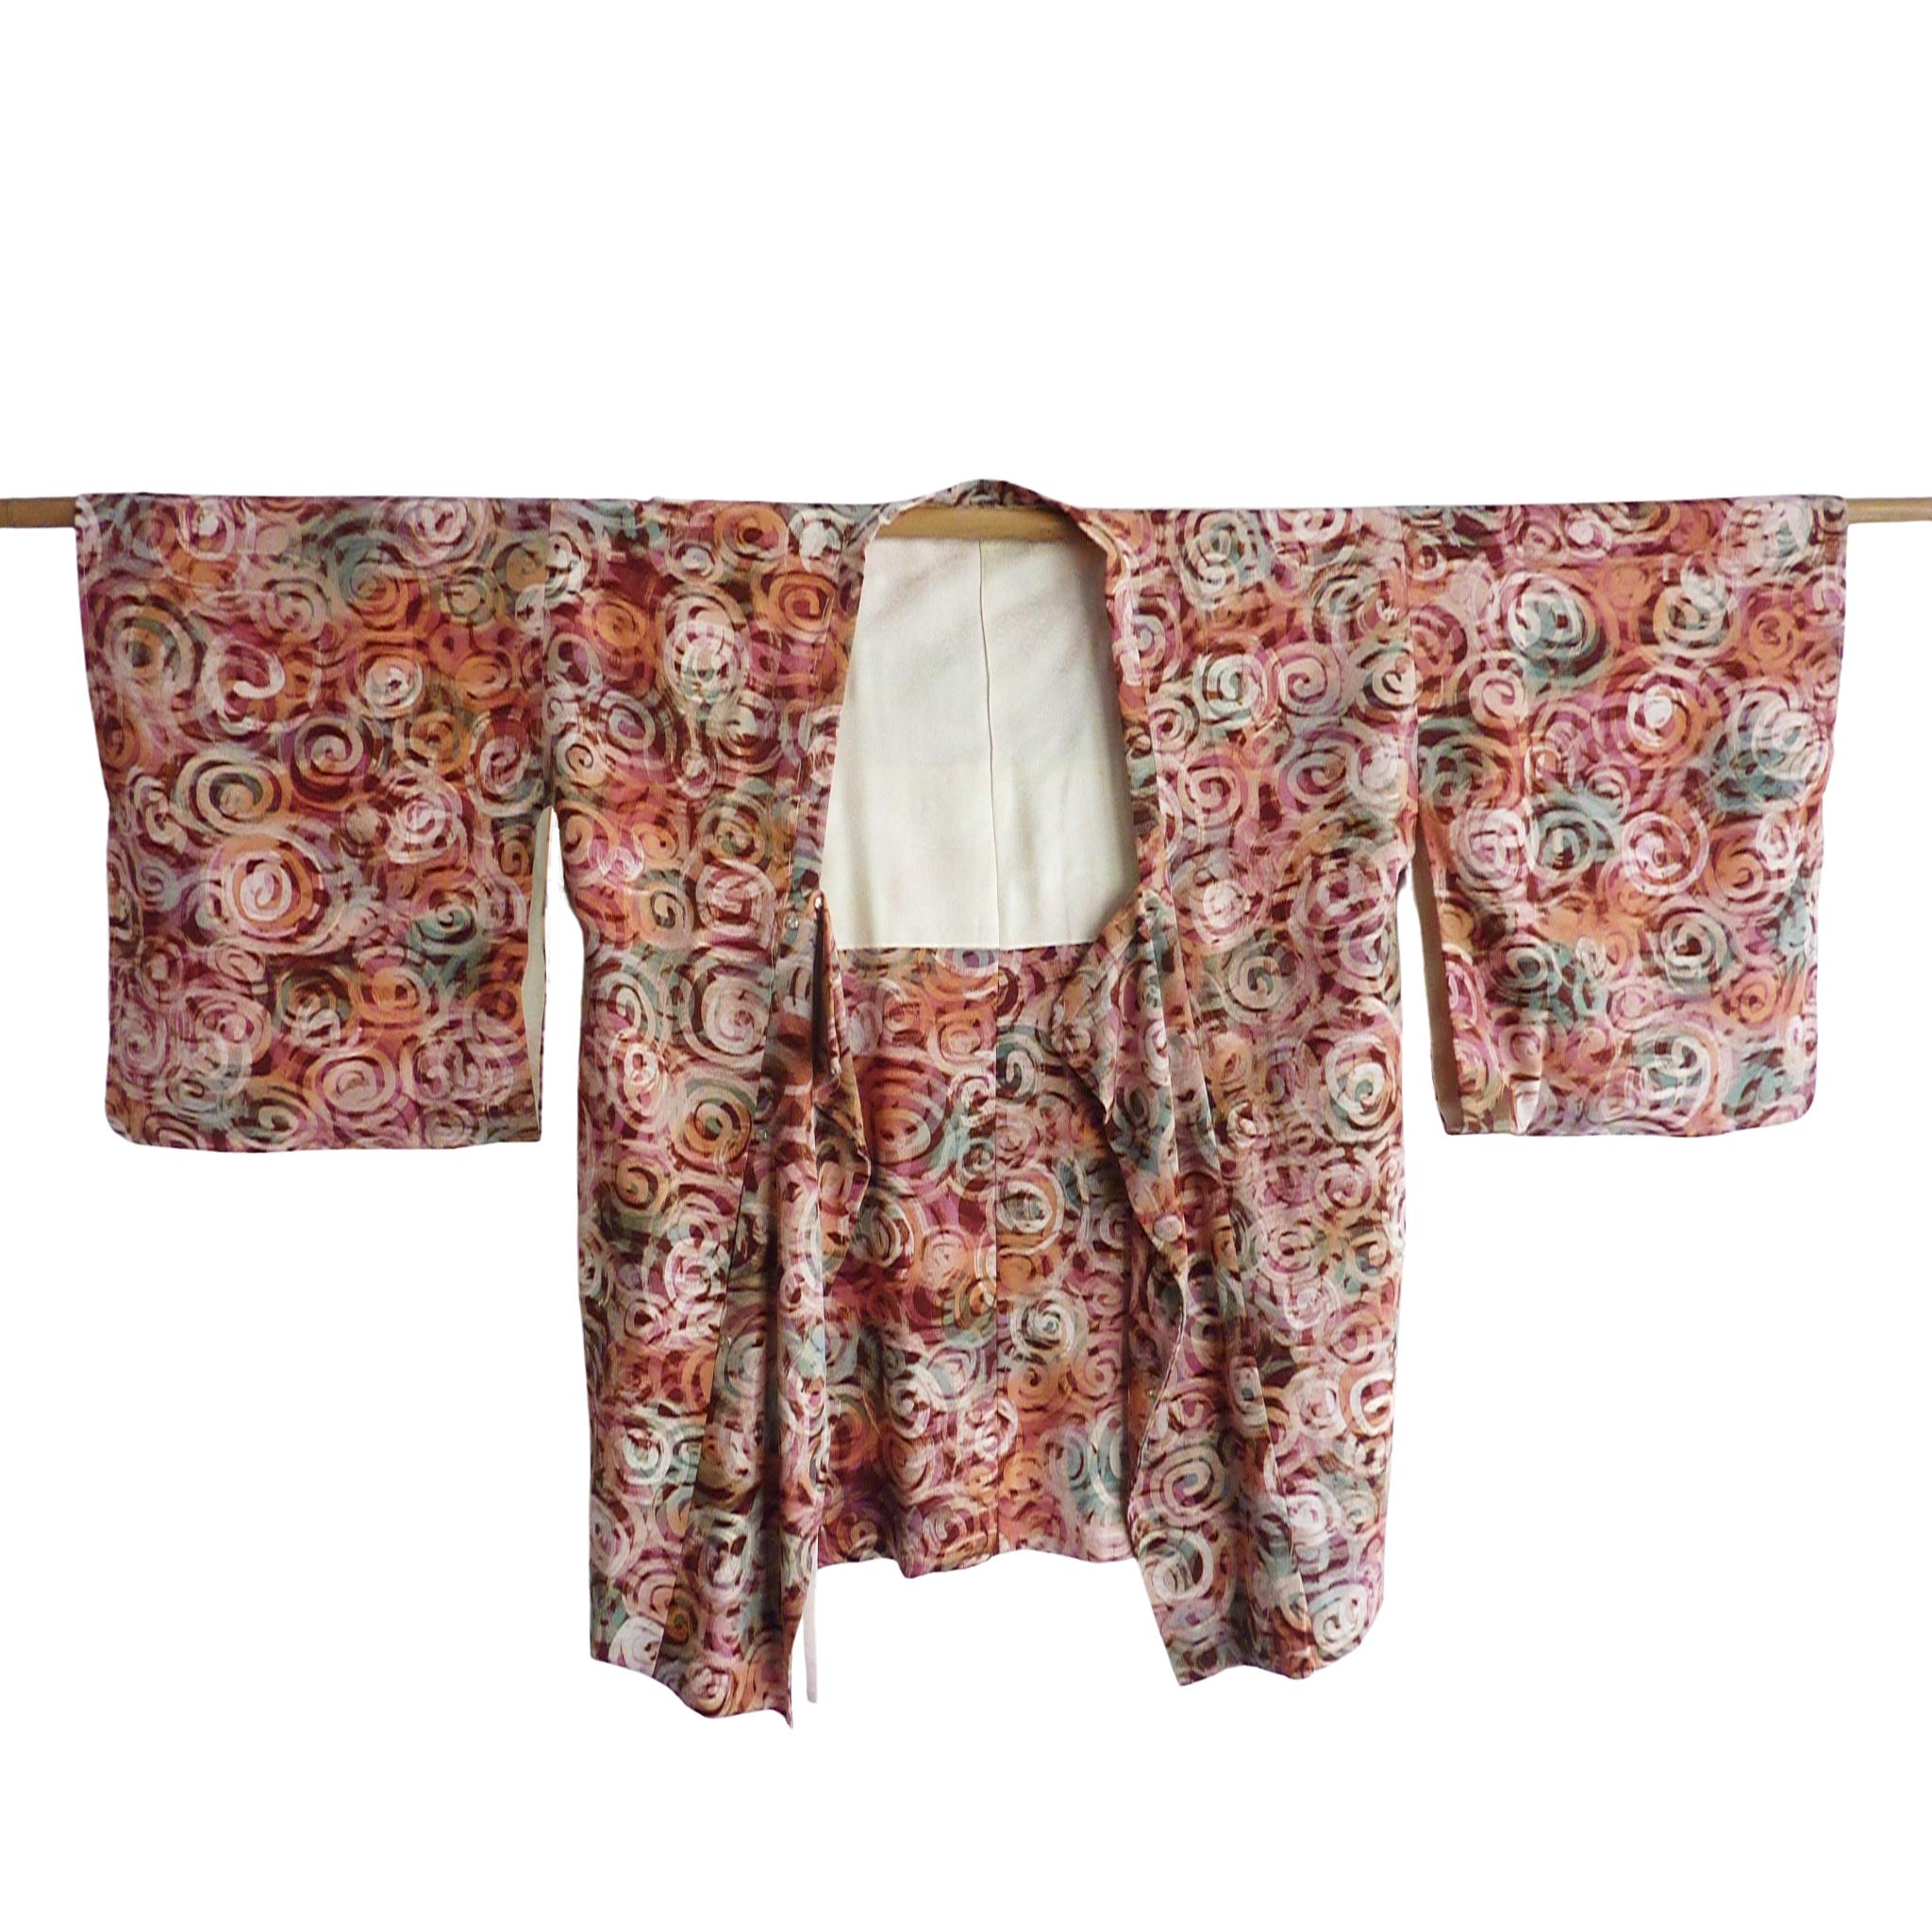 Rare kimono avec des boutons et une profonde chute des manches.
Circa : 1920s
Lieu d'origine : Japon
Matériau : Soie. Doublure en jacquard de soie.
Quelques fils perdus. 
Longueur totale 34 cm.  Manchon d'un bout à l'autre : 48